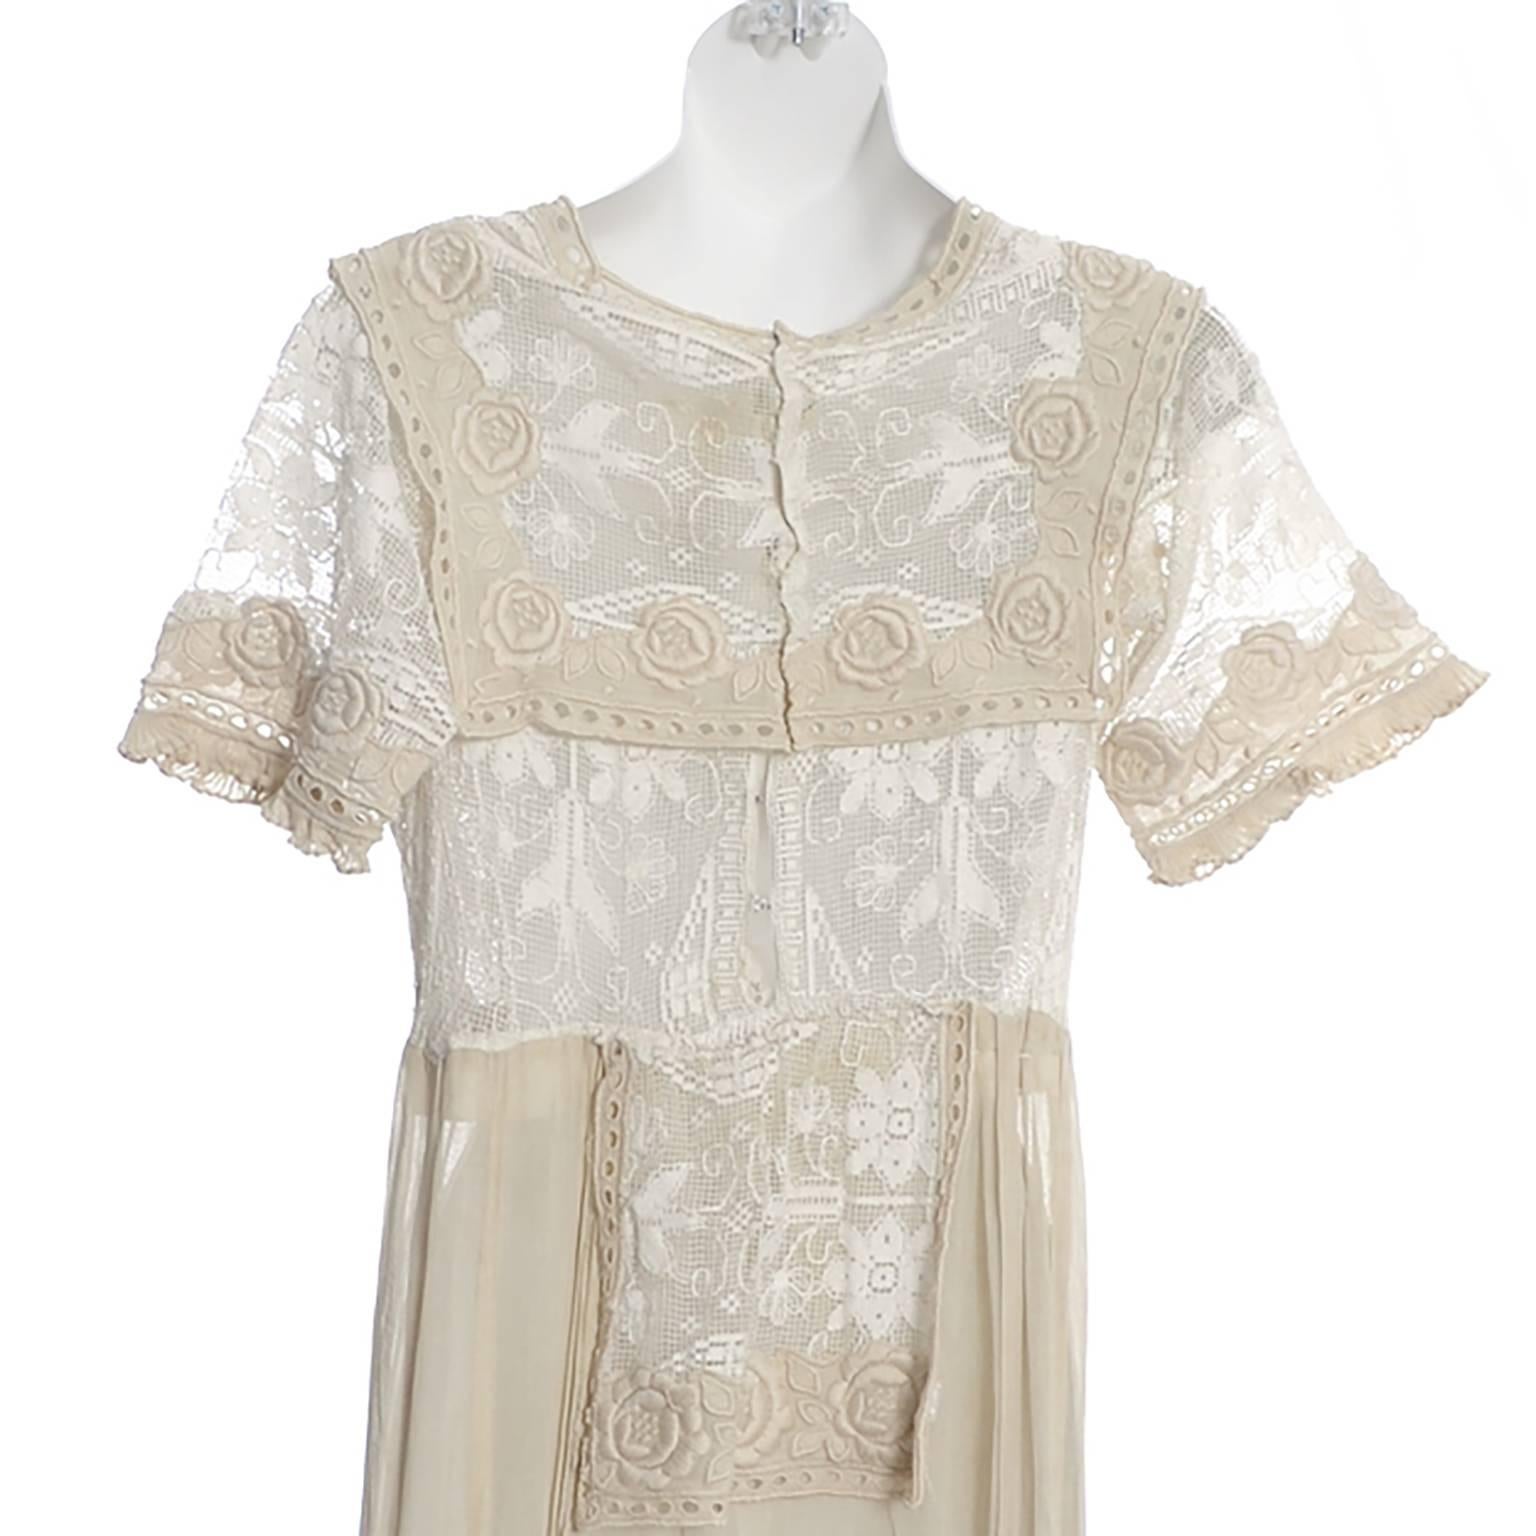 Beige Edwardian Lace Embroidered Fine Vintage Dress or Wedding Dress